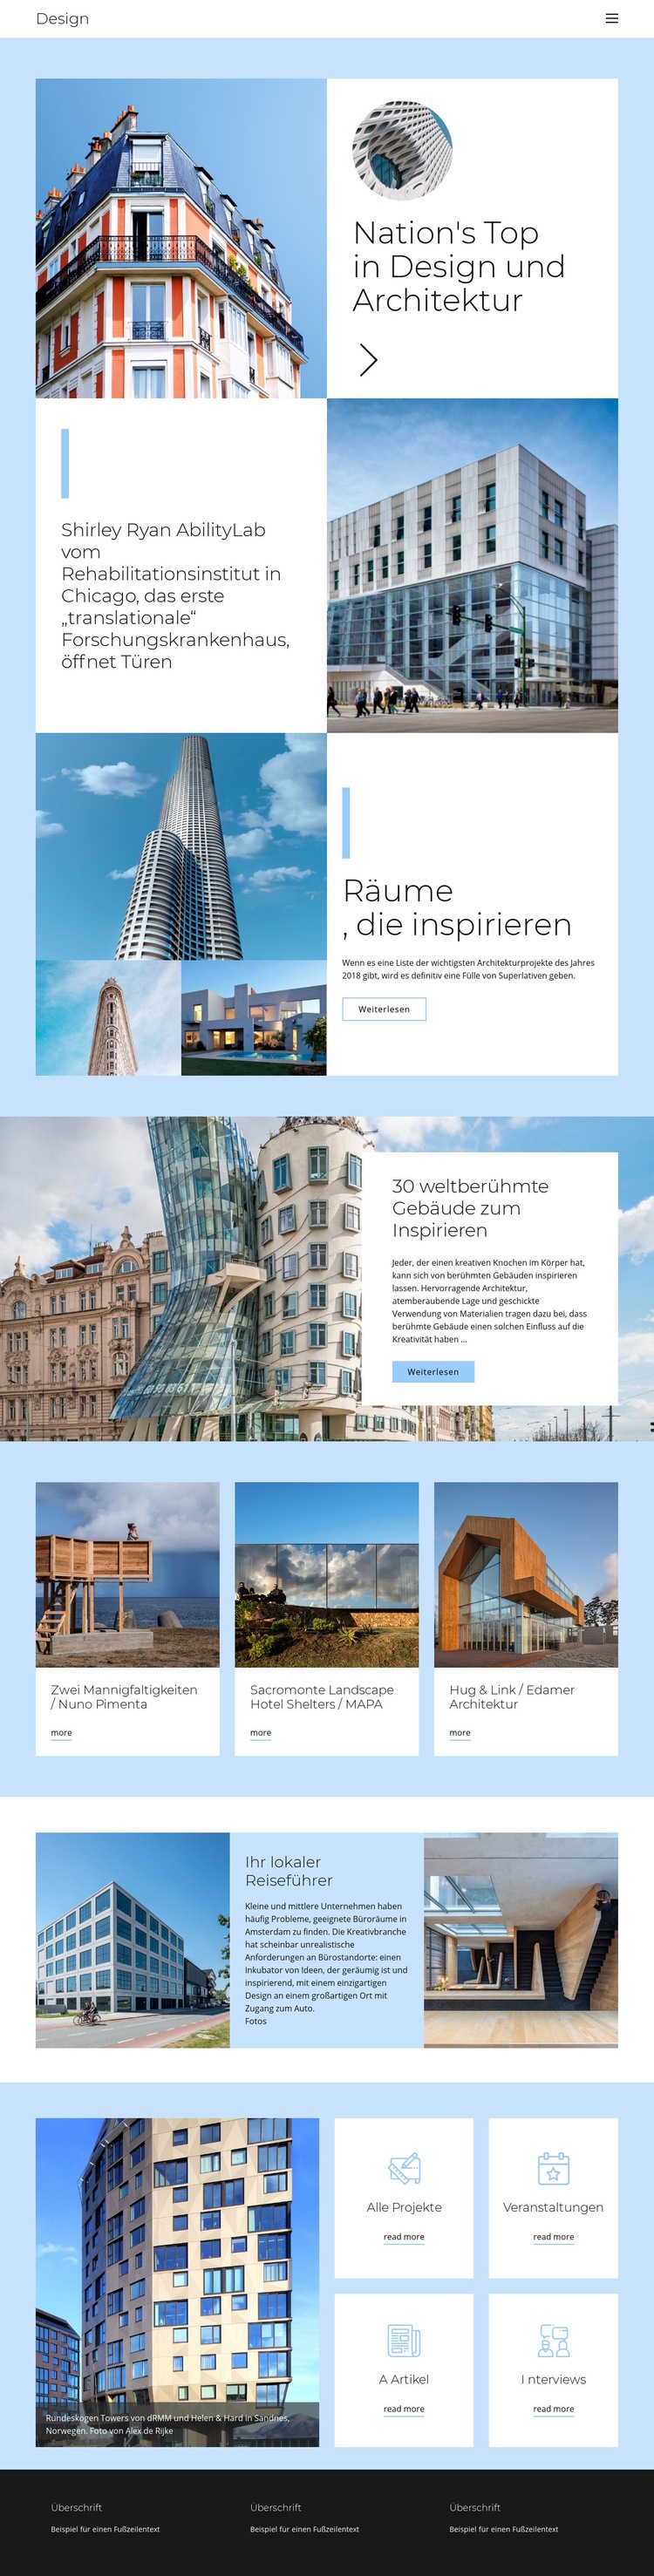 Architektur Stadtführer Website-Modell